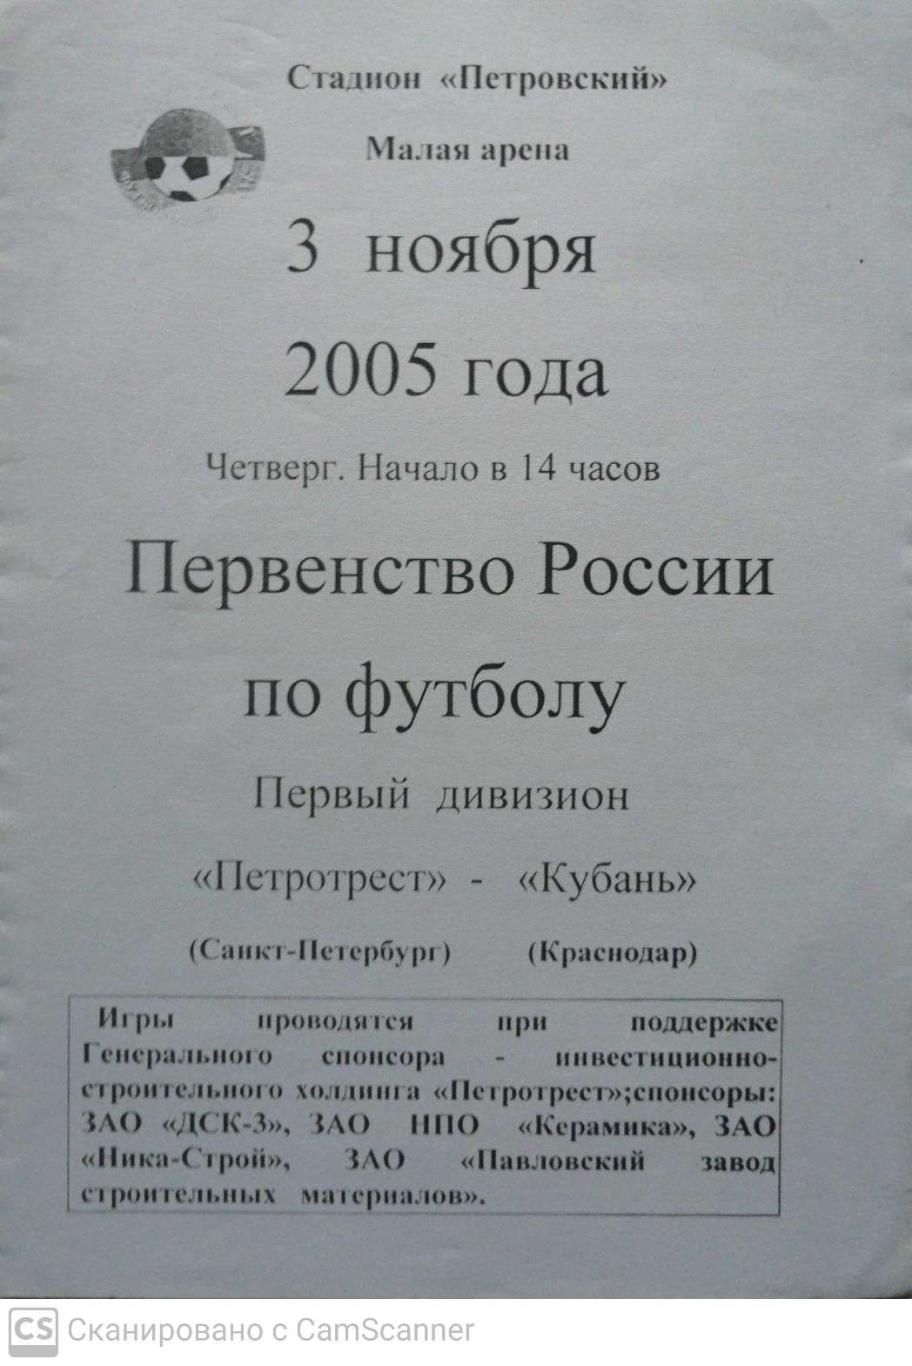 Первый дивизион. Петротрест СПб - Кубань 3.11.2005